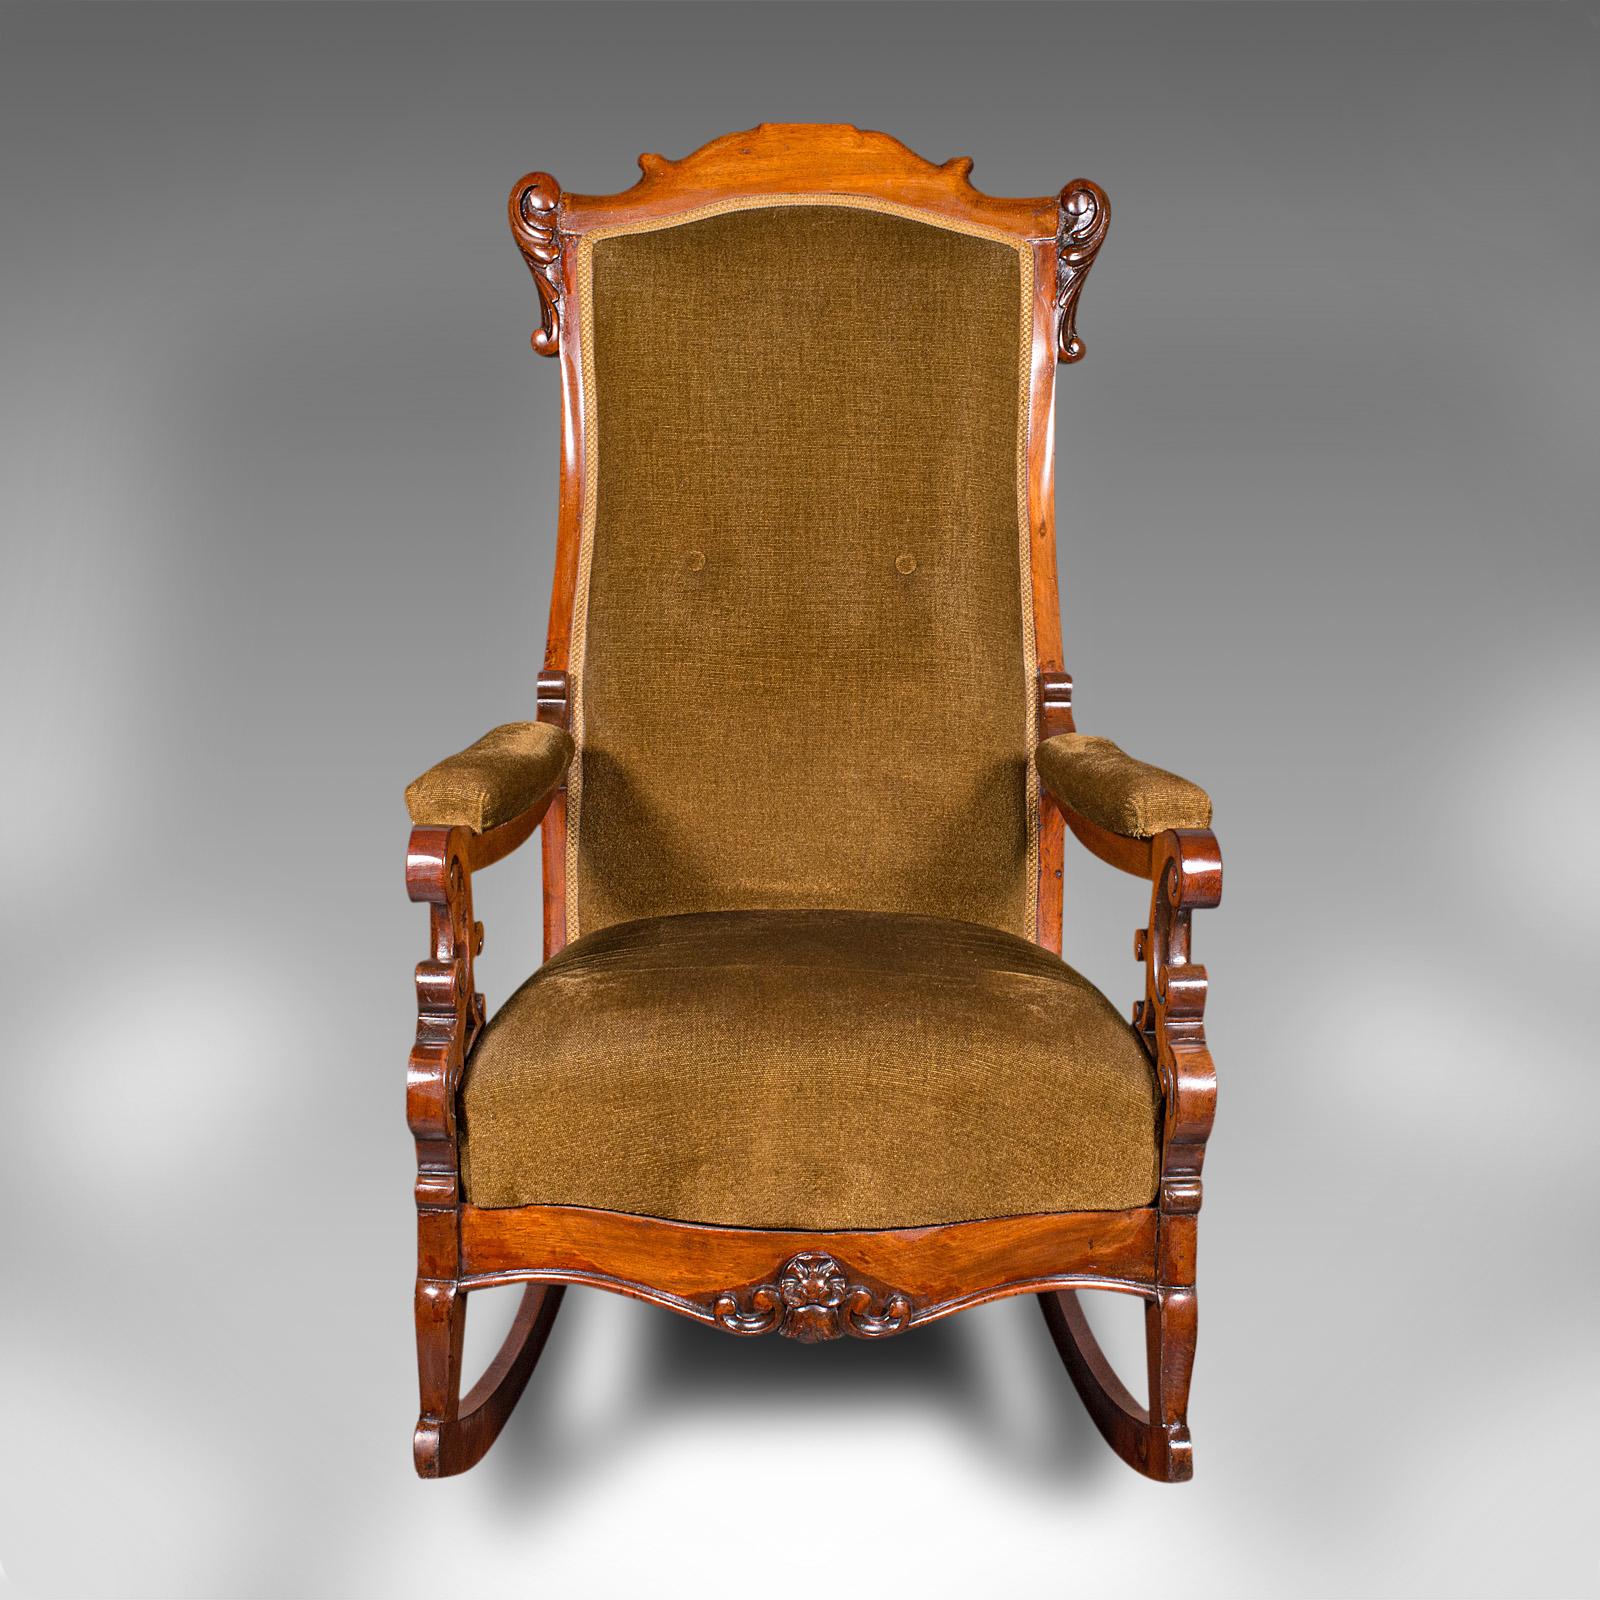 Dies ist ein antiker Schaukelstuhl. Ein englischer Sessel mit Nussbaumrahmen aus der späten viktorianischen Zeit, um 1880.

Entspannen Sie sich und lassen Sie den Tag mit dieser attraktiven Wippe ausklingen
Zeigt eine wünschenswerte gealterte Patina